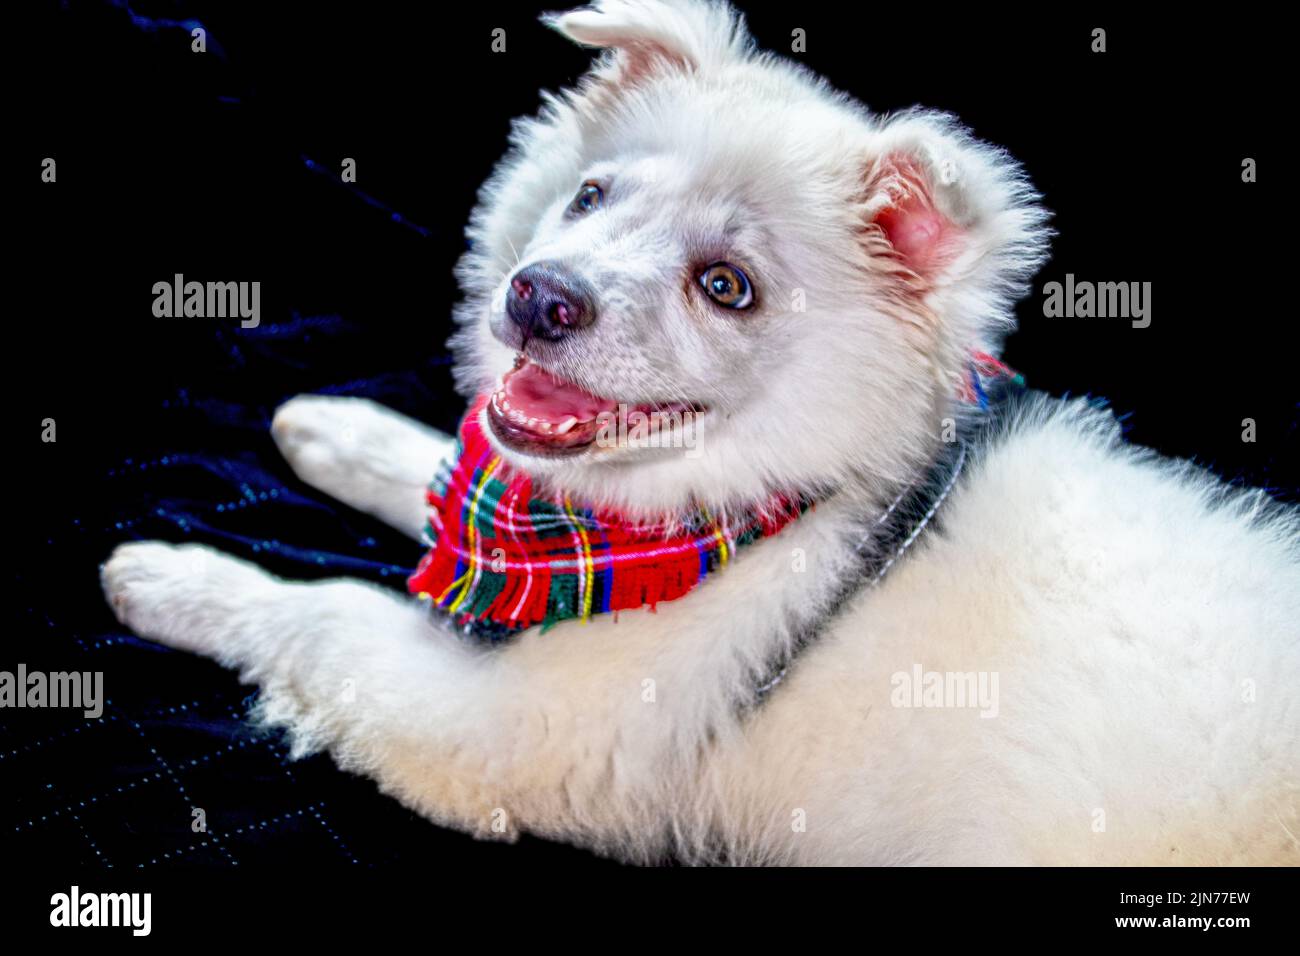 Jeune américain Eskimo à yeux brillants - Eskie - chiot avec bandana à carreaux rouges et halter posant sur fond arrière-plan Banque D'Images